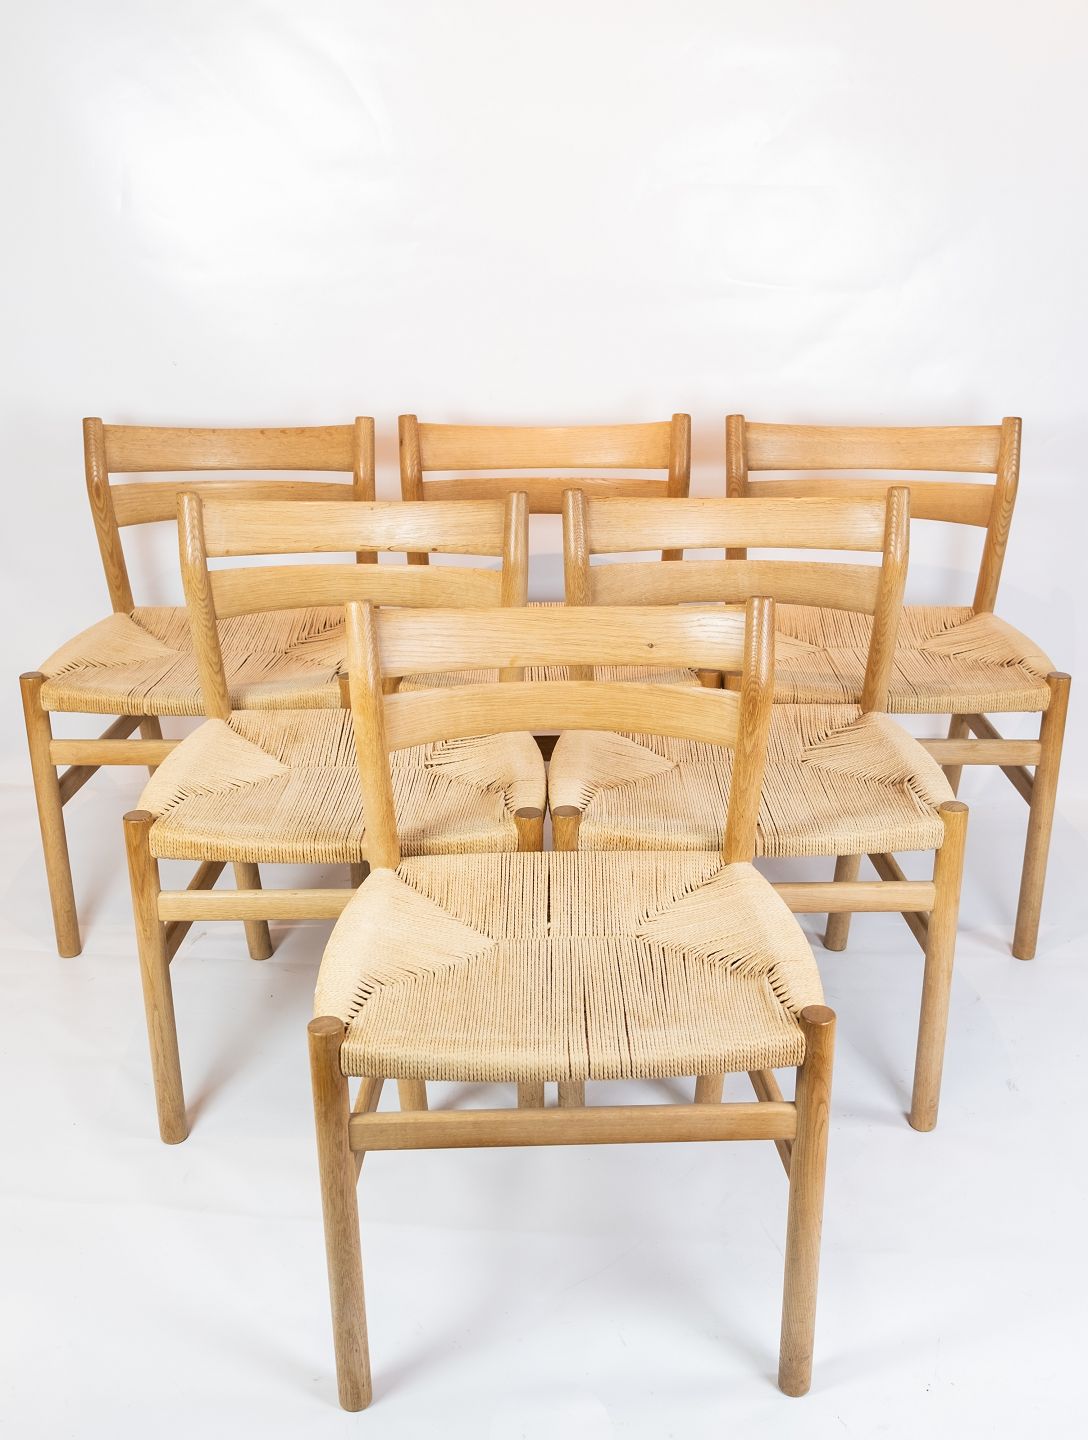 Sæt af seks spisestuestole, model BM1, i egetræ og designet af Børge Mogens Osted & Design